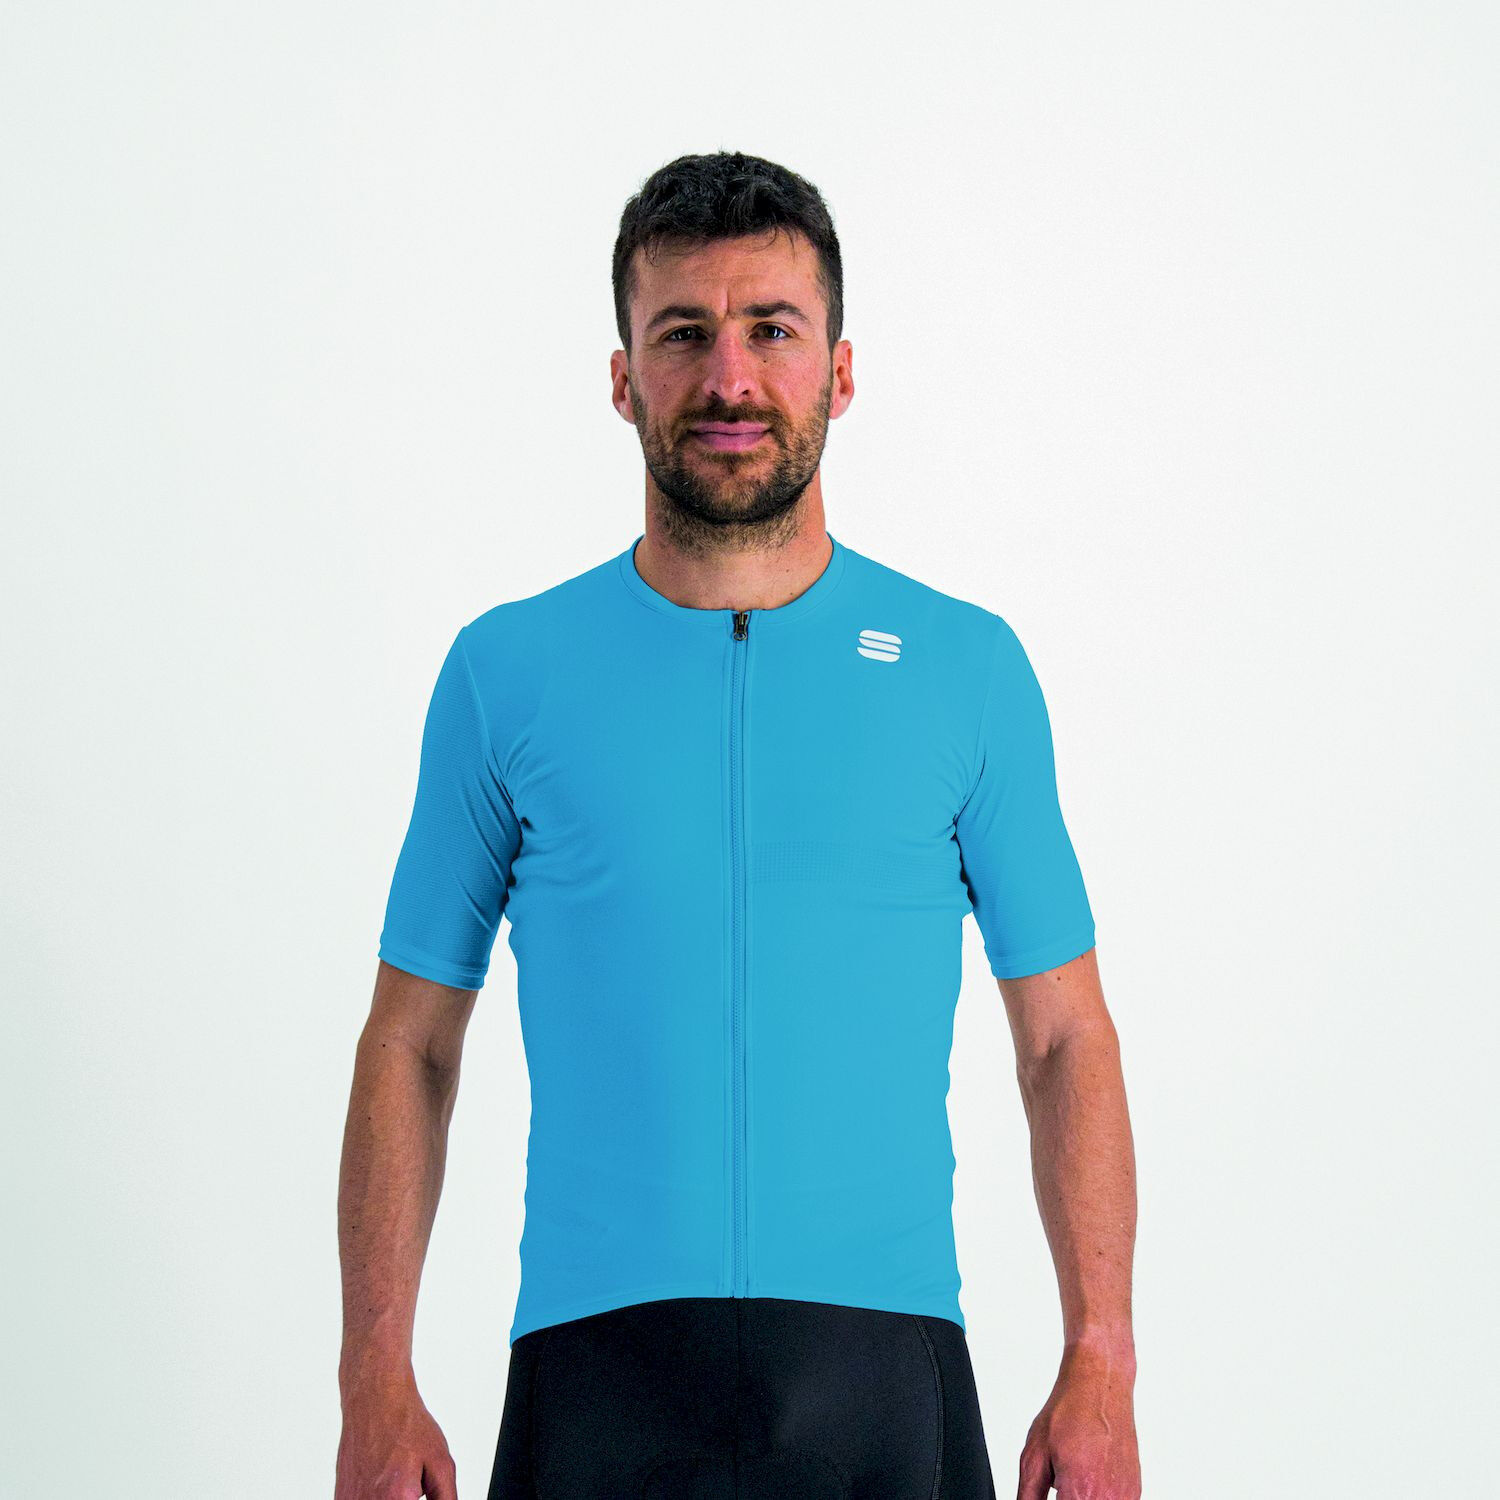 Sportful Matchy Short Sleeve - Cycling jersey - Men's